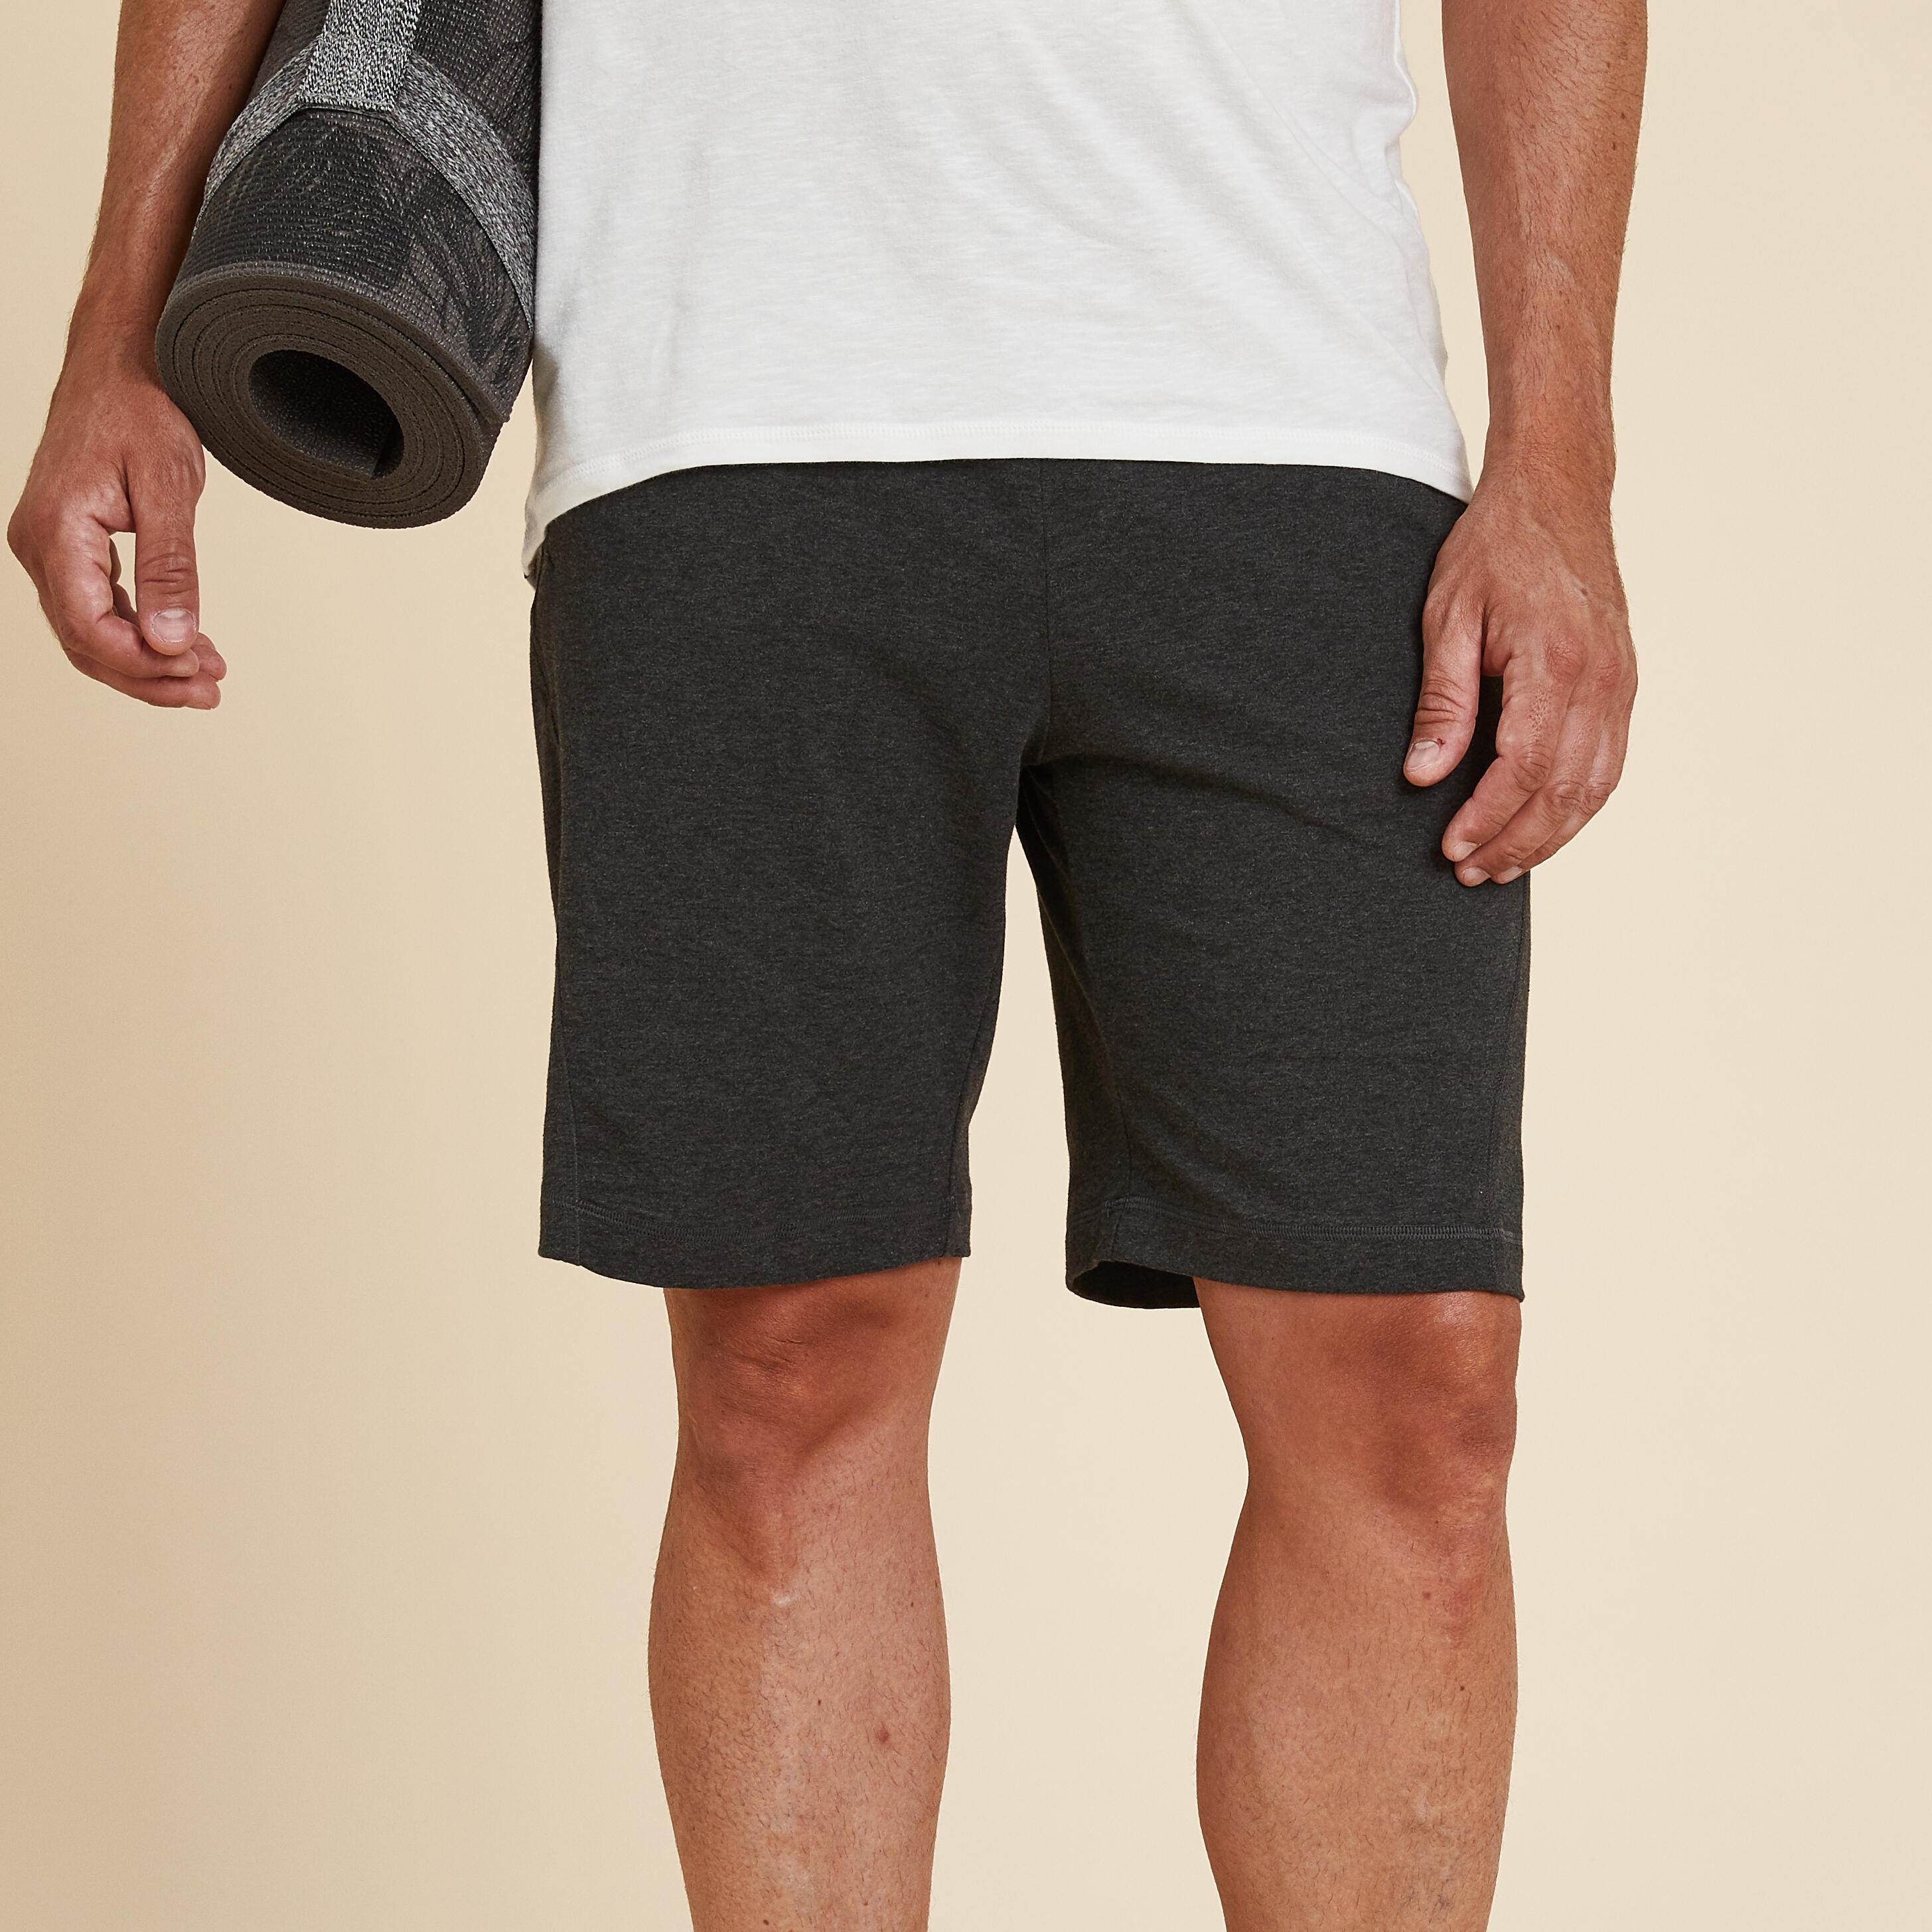 Mens Hot yoga shorts, by Sweat-n-Stretch hot yoga wear